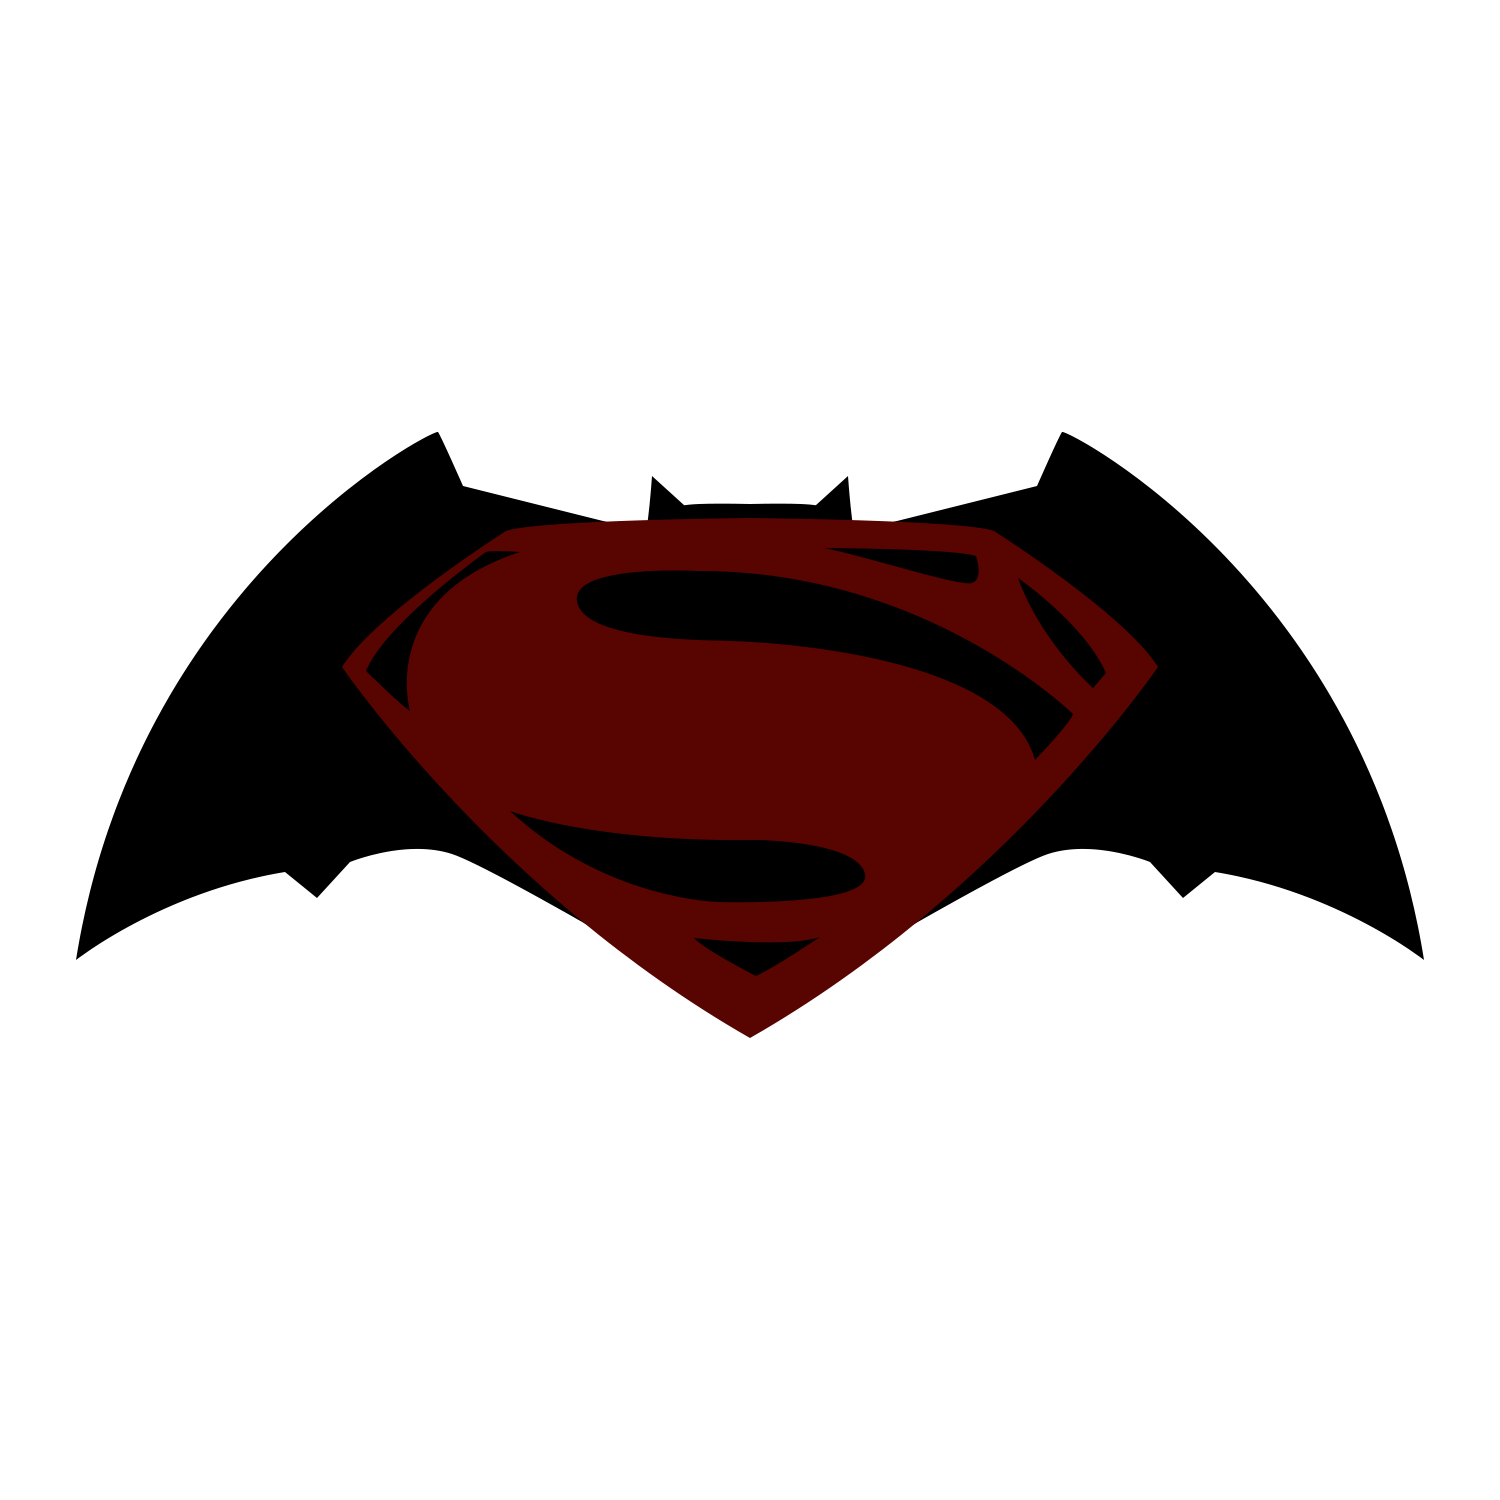 Free Superman Vs Batman Clipart Download Free Superman Vs Batman